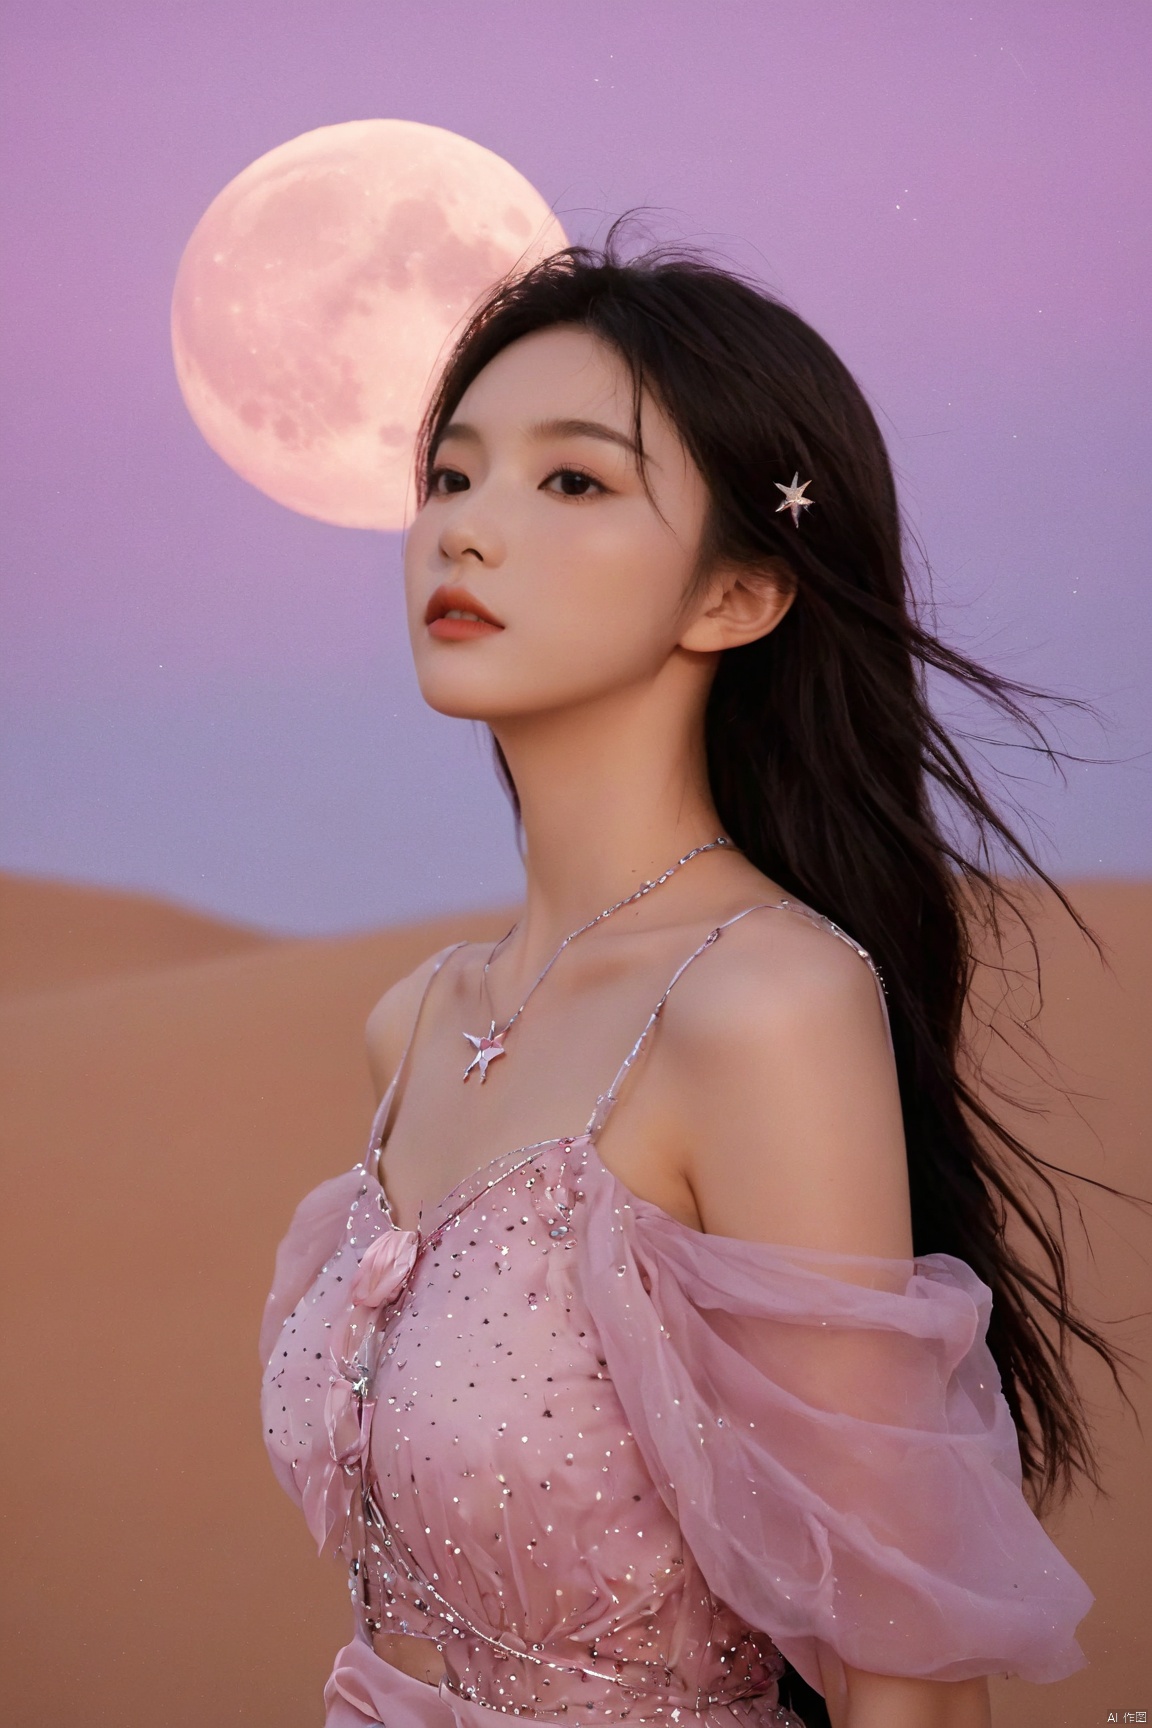 desert_sky,1girl,full moon,scenery,desert,pink-purple sky,star,more detail XL,xxmixgirl, xxmix_girl, monkren, qingyi, 